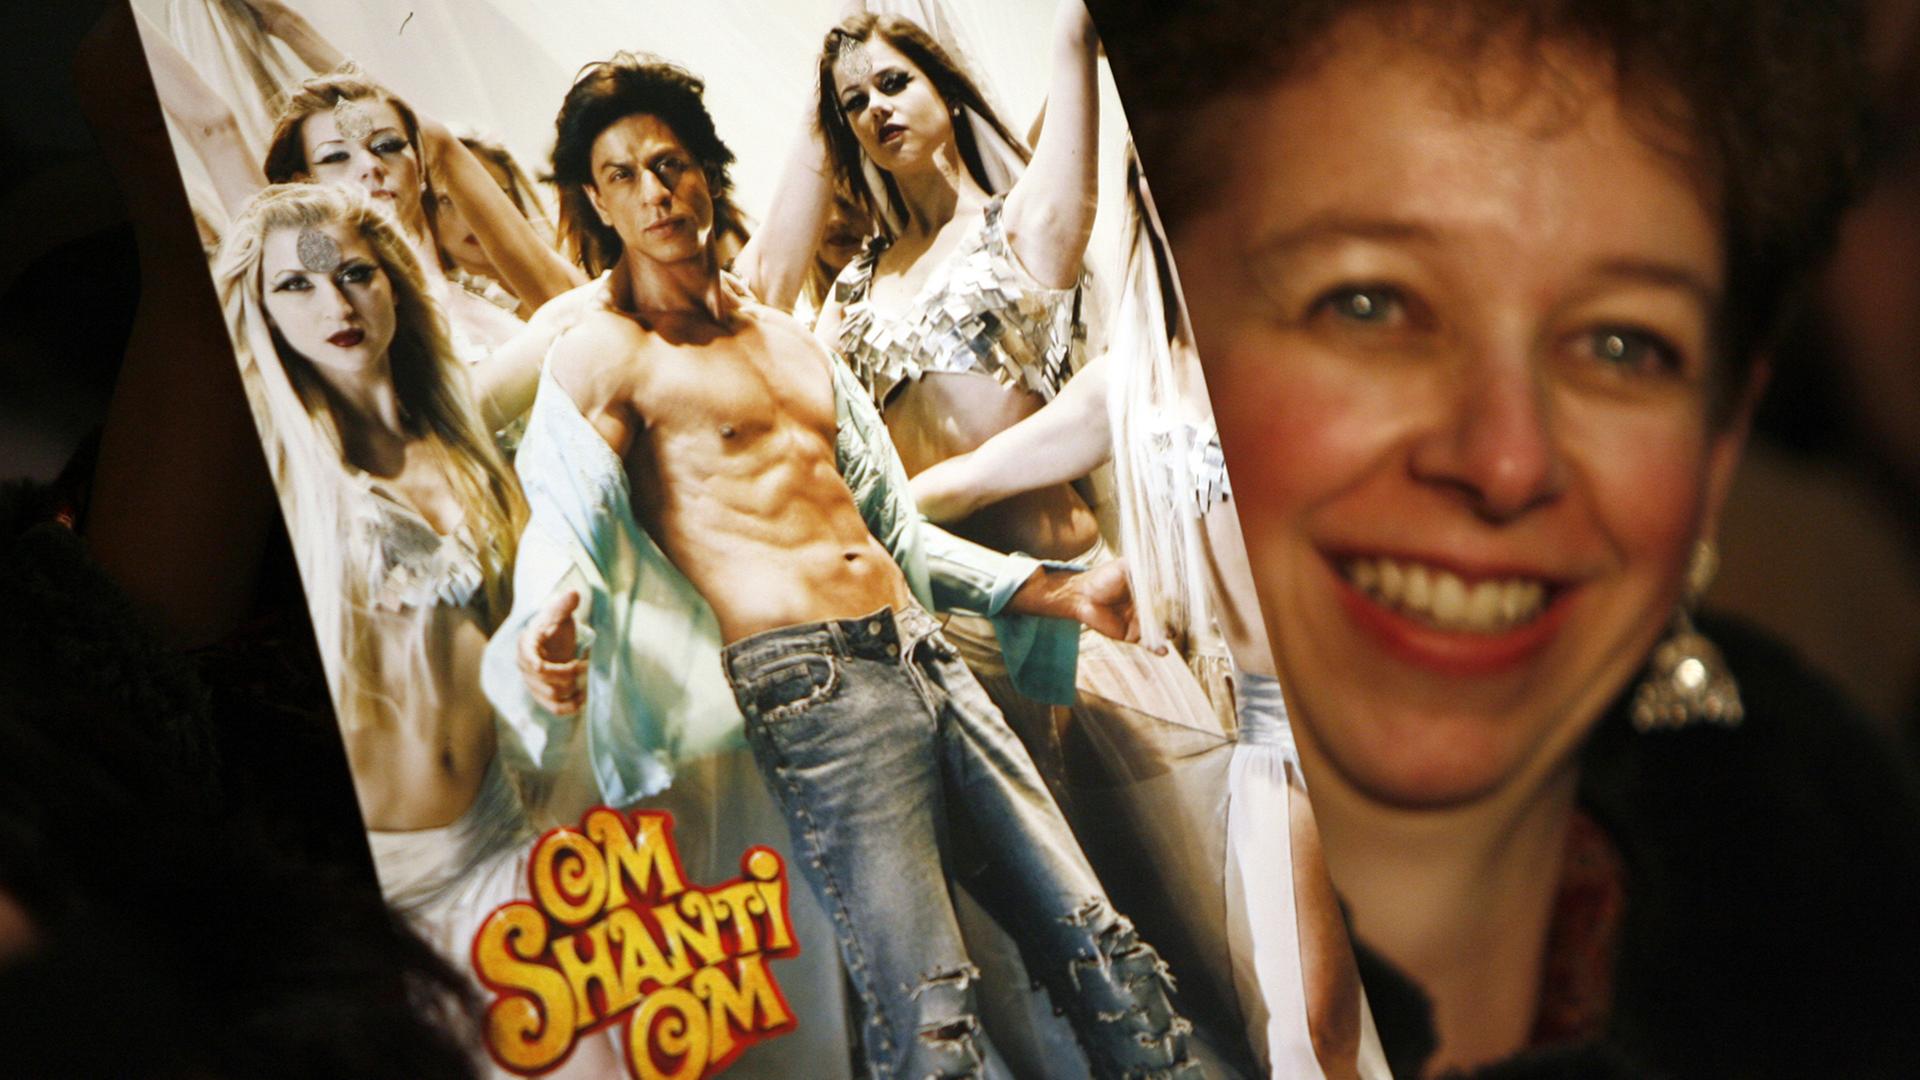 Ein Fan des indischen Schauspielers Shah Rukh Khan wartet mit einem Plakat des bekannten Bollywoodfilms "Om Shanti Om" auf ihren Star. (08.02.2008)